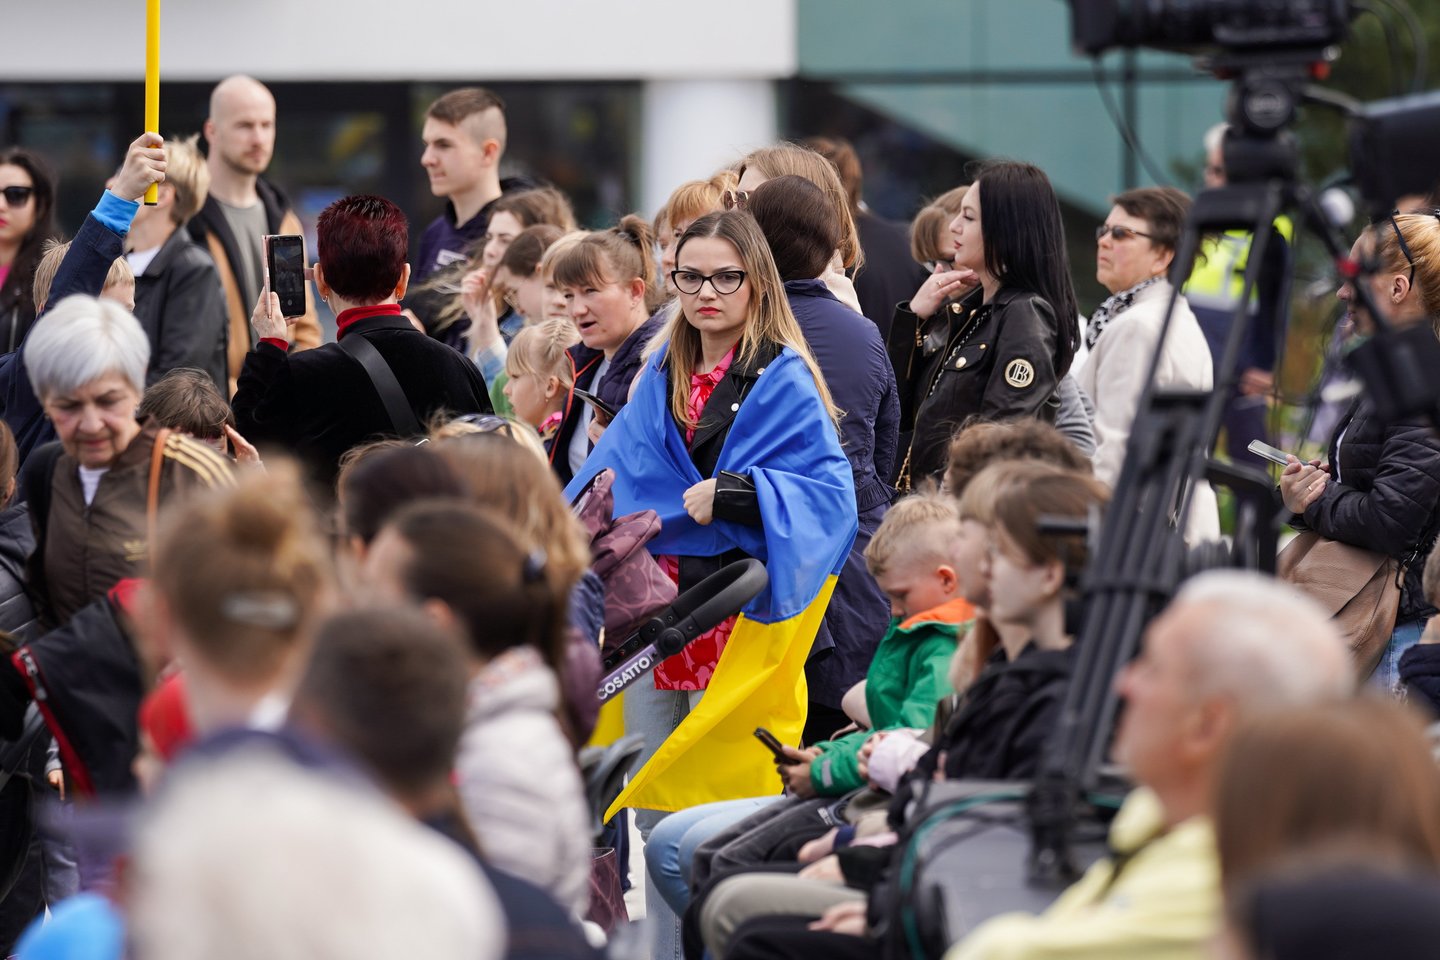 Nors nuo karo pradžios į Lietuvą pabėgę ukrainiečiai jau sudaro daugiau nei 2 procentus visų šalies gyventojų, prognozuojama, kad jau netrukus karo pabėgėlių skaičius gali ženkliai išaugti.<br>G.Bitvinsko nuotr.